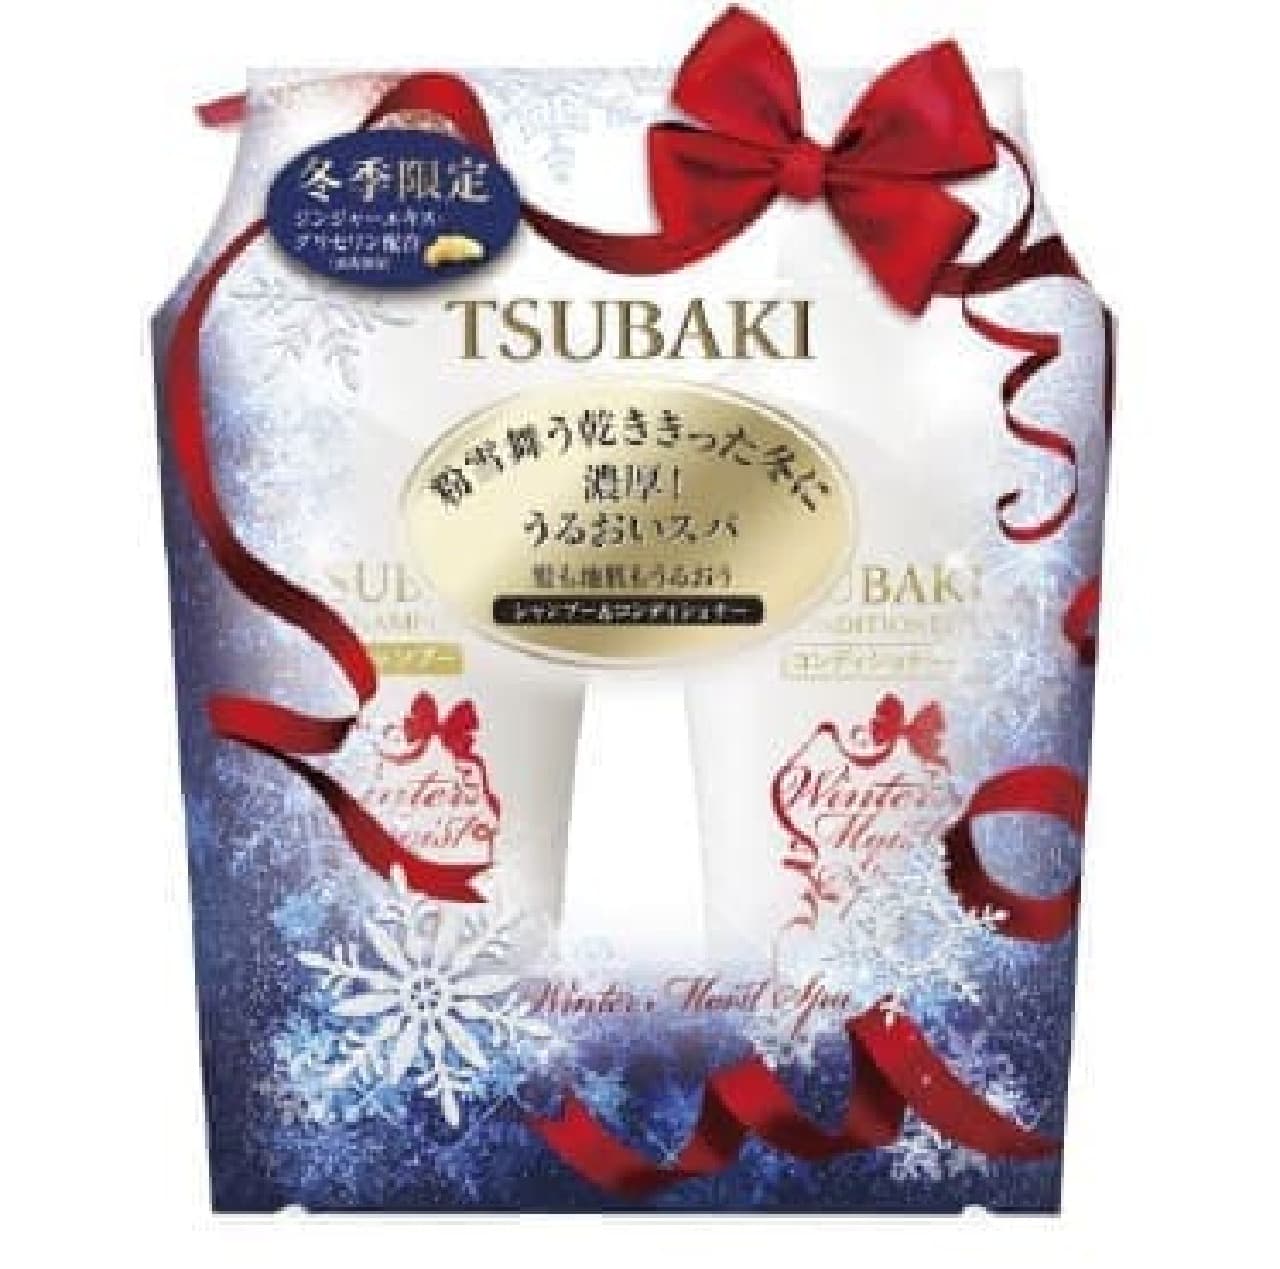 TSUBAKI Winter Moist Shampoo & Conditioner